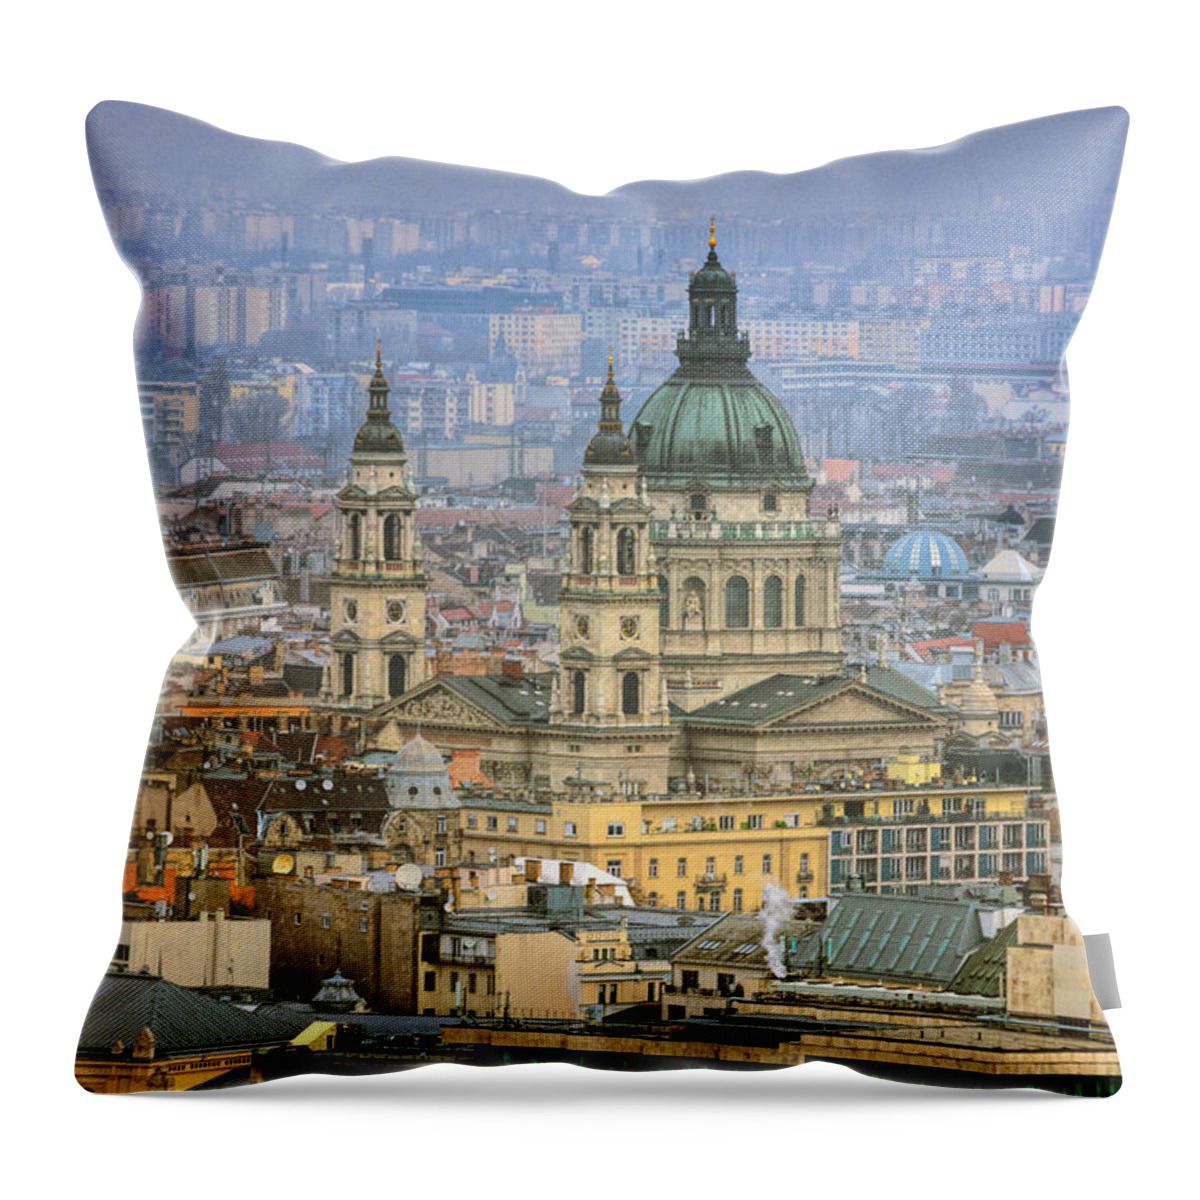 Joan Carroll Throw Pillow featuring the photograph St Stephen's Basilica From Gellert Hill by Joan Carroll